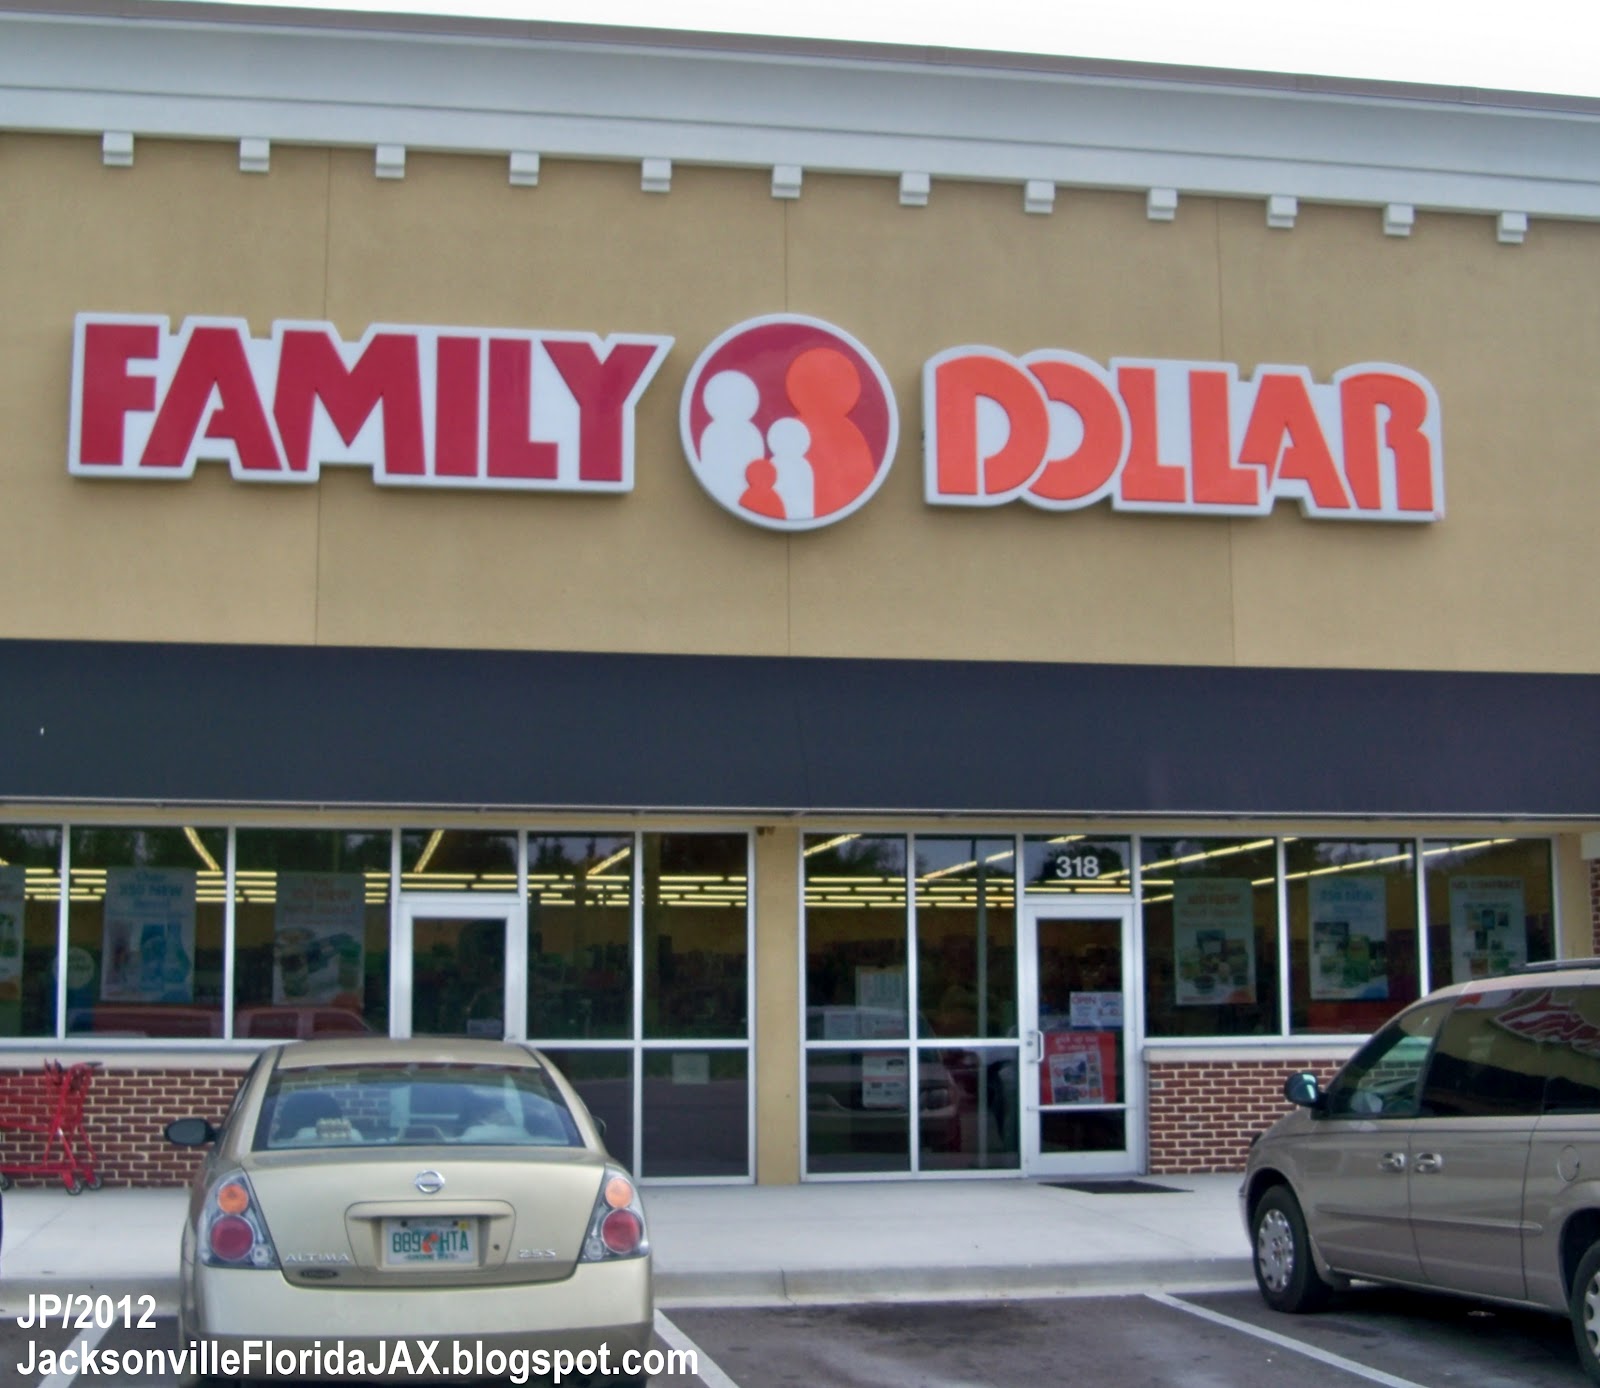 ... Store FL.: FAMILY DOLLAR JACKSONVILLE FLORIDA 318 Dunn Ave. Family